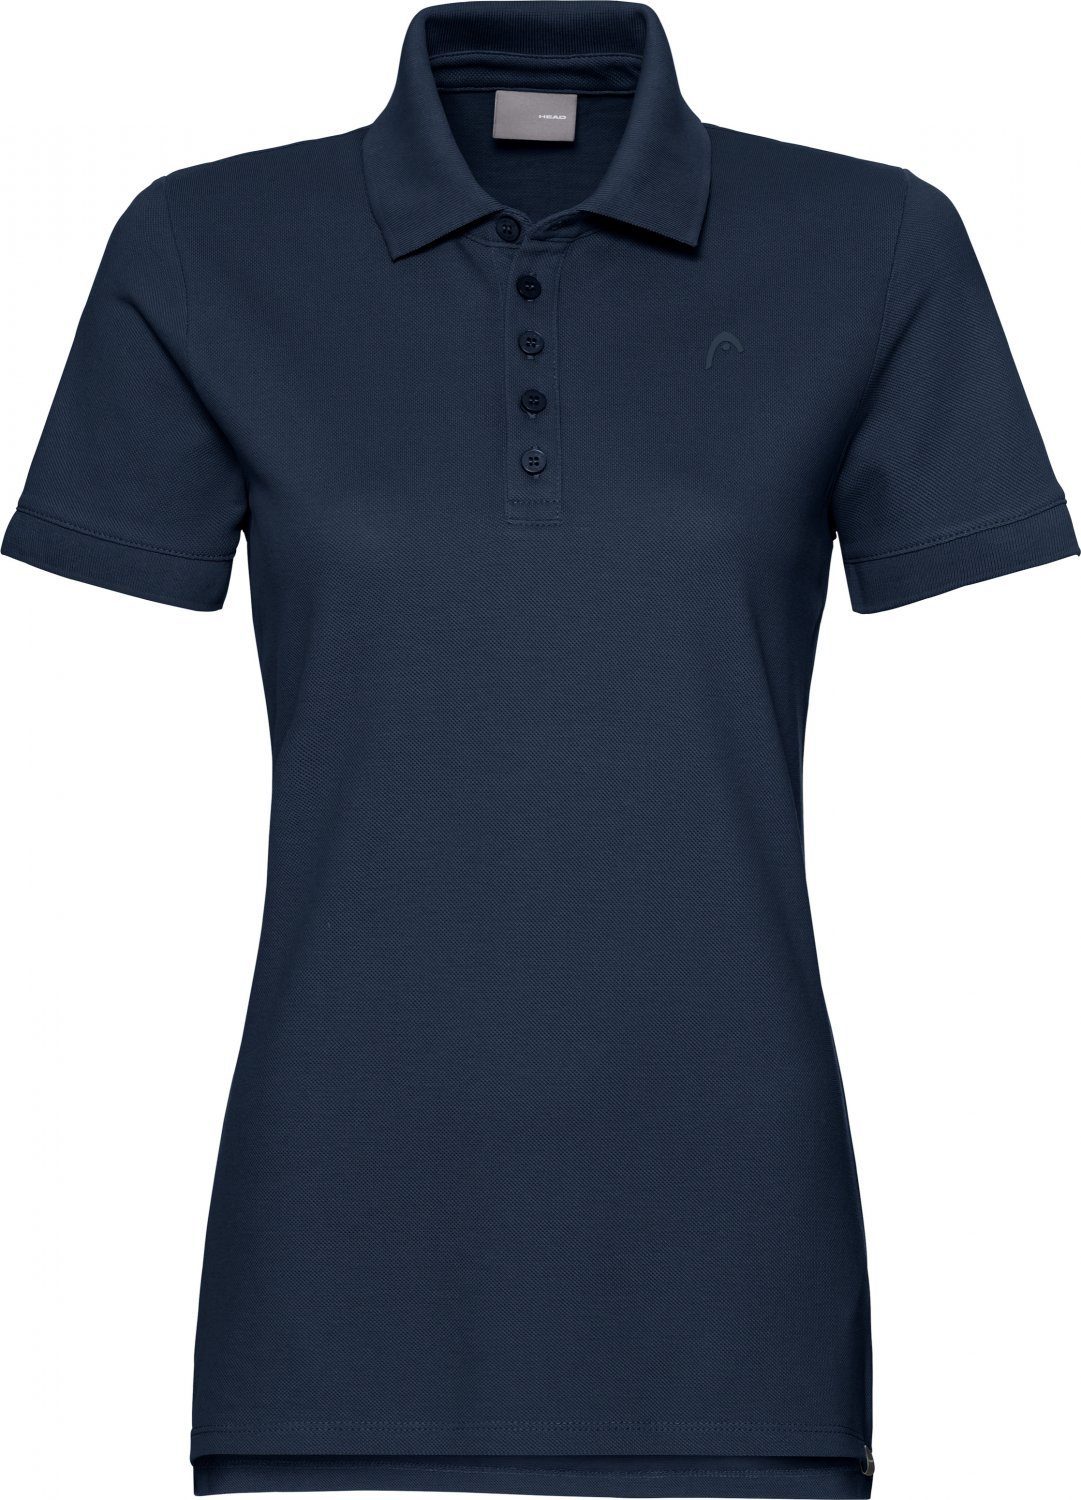 Head Tennisshirt Head Damen Polo Shirt online kaufen | OTTO